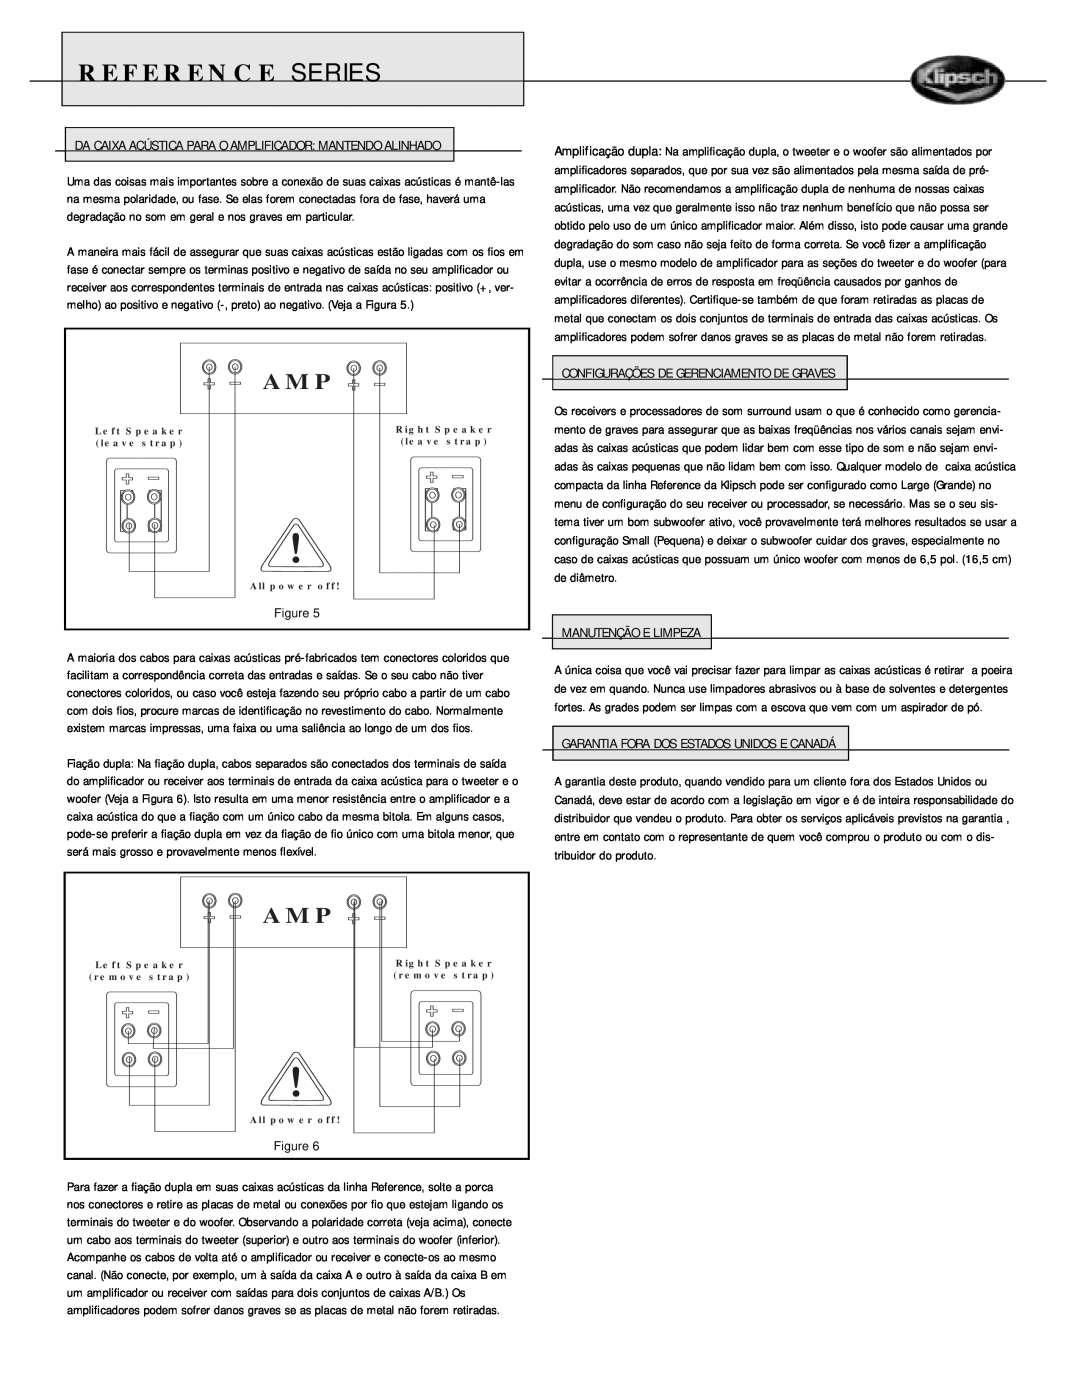 Klipsch Speaker owner manual Reference Series, Configurações De Gerenciamento De Graves, Manutenção E Limpeza 